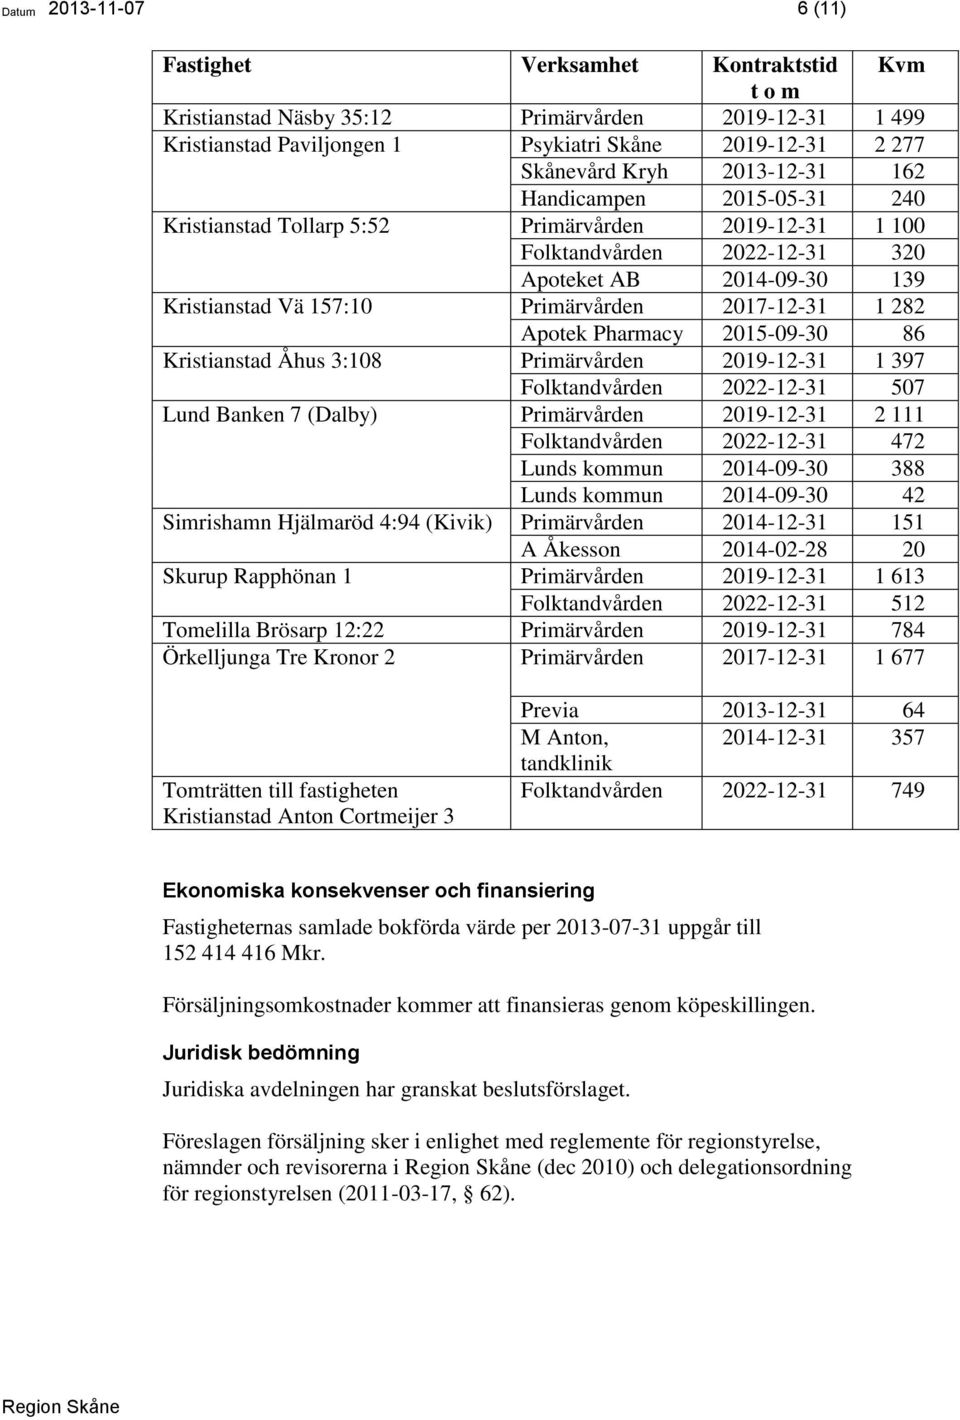 2017-12-31 1 282 Apotek Pharmacy 2015-09-30 86 Kristianstad Åhus 3:108 Primärvården 2019-12-31 1 397 Folktandvården 2022-12-31 507 Lund Banken 7 (Dalby) Primärvården 2019-12-31 2 111 Folktandvården